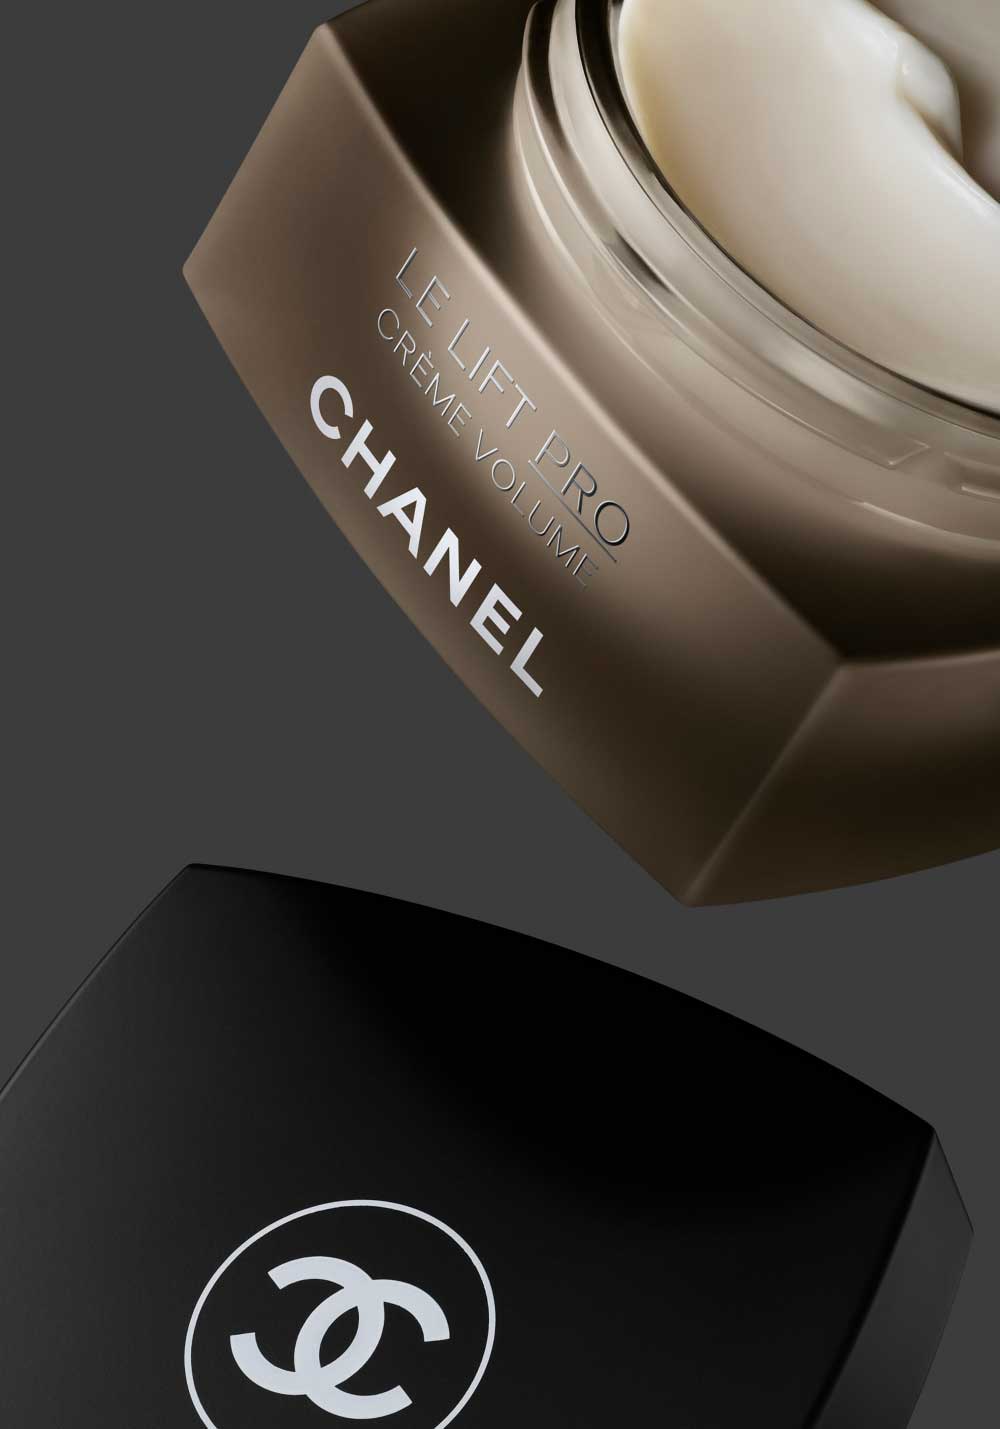 Alta tecnología antiedad de Chanel: Le Lift Pro